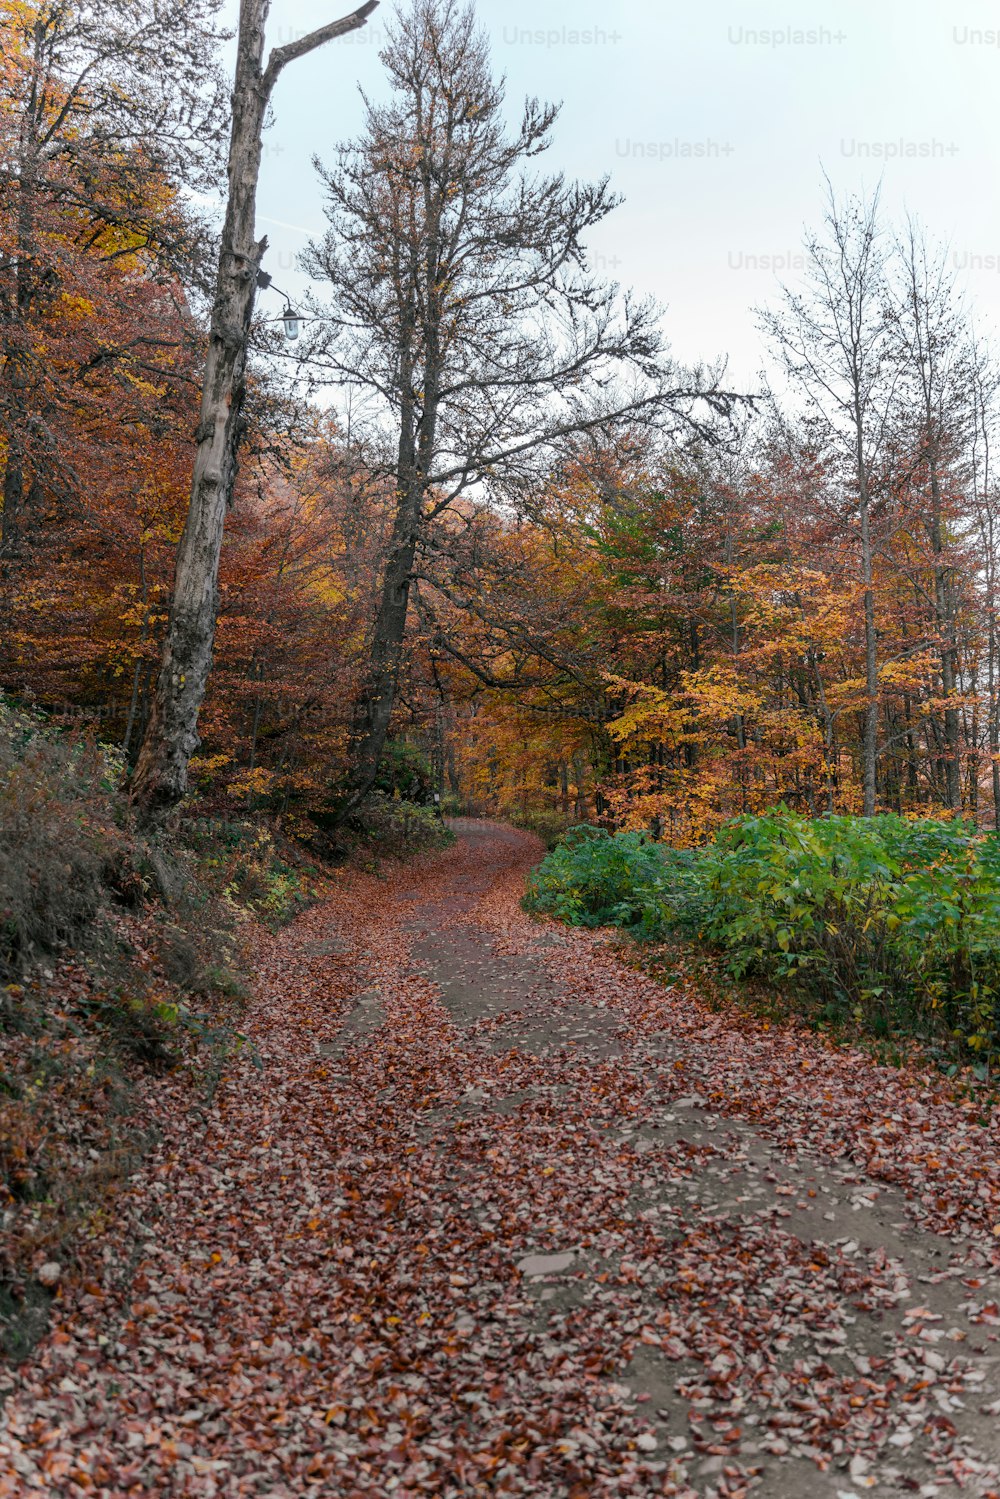 Una strada sterrata circondata da alberi e foglie